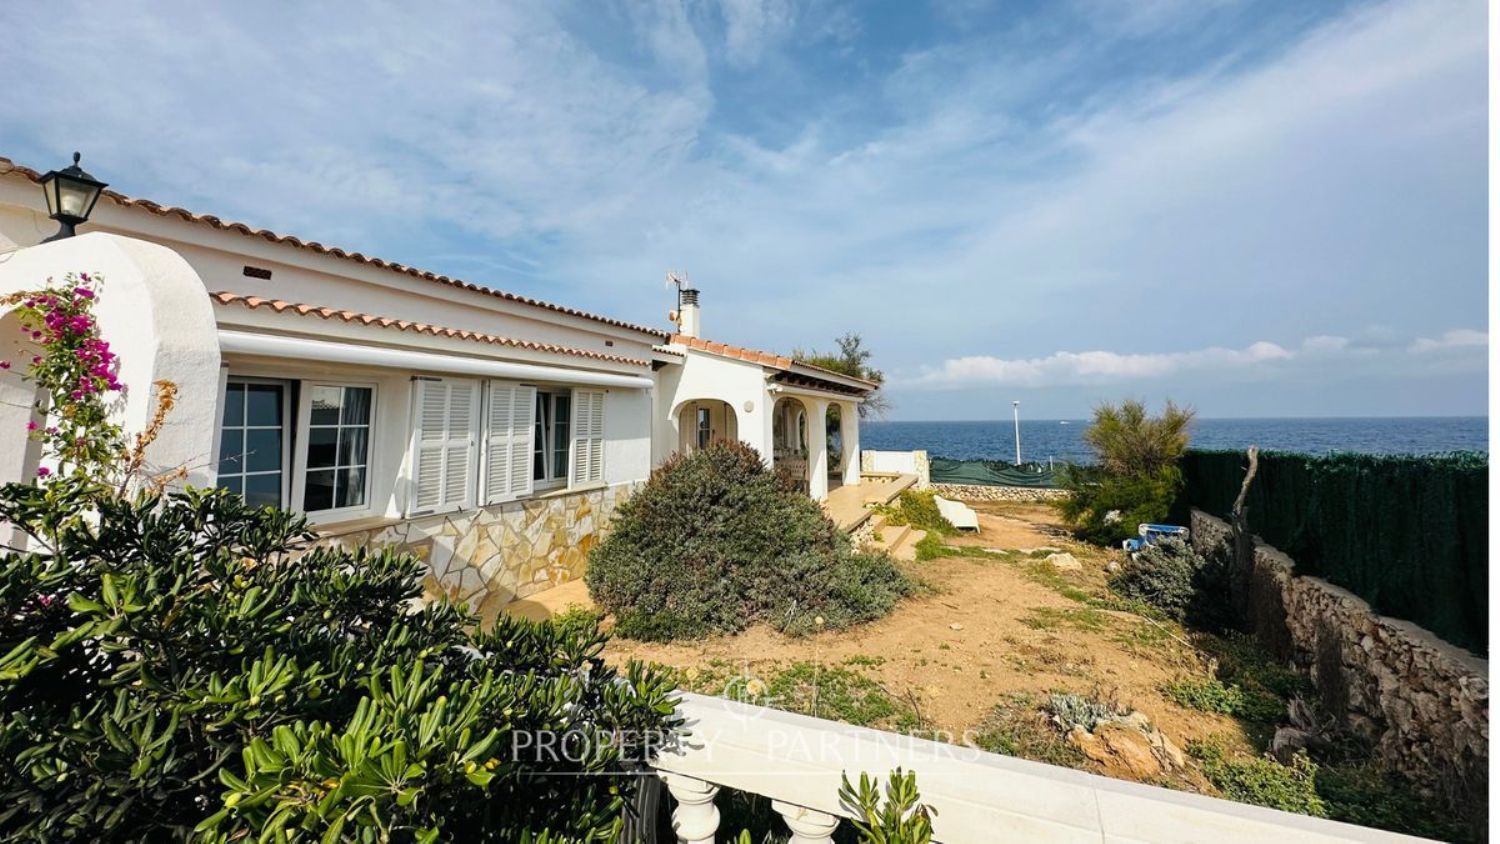 Casa à venda em frente ao mar em Sant Lluis, Menorca